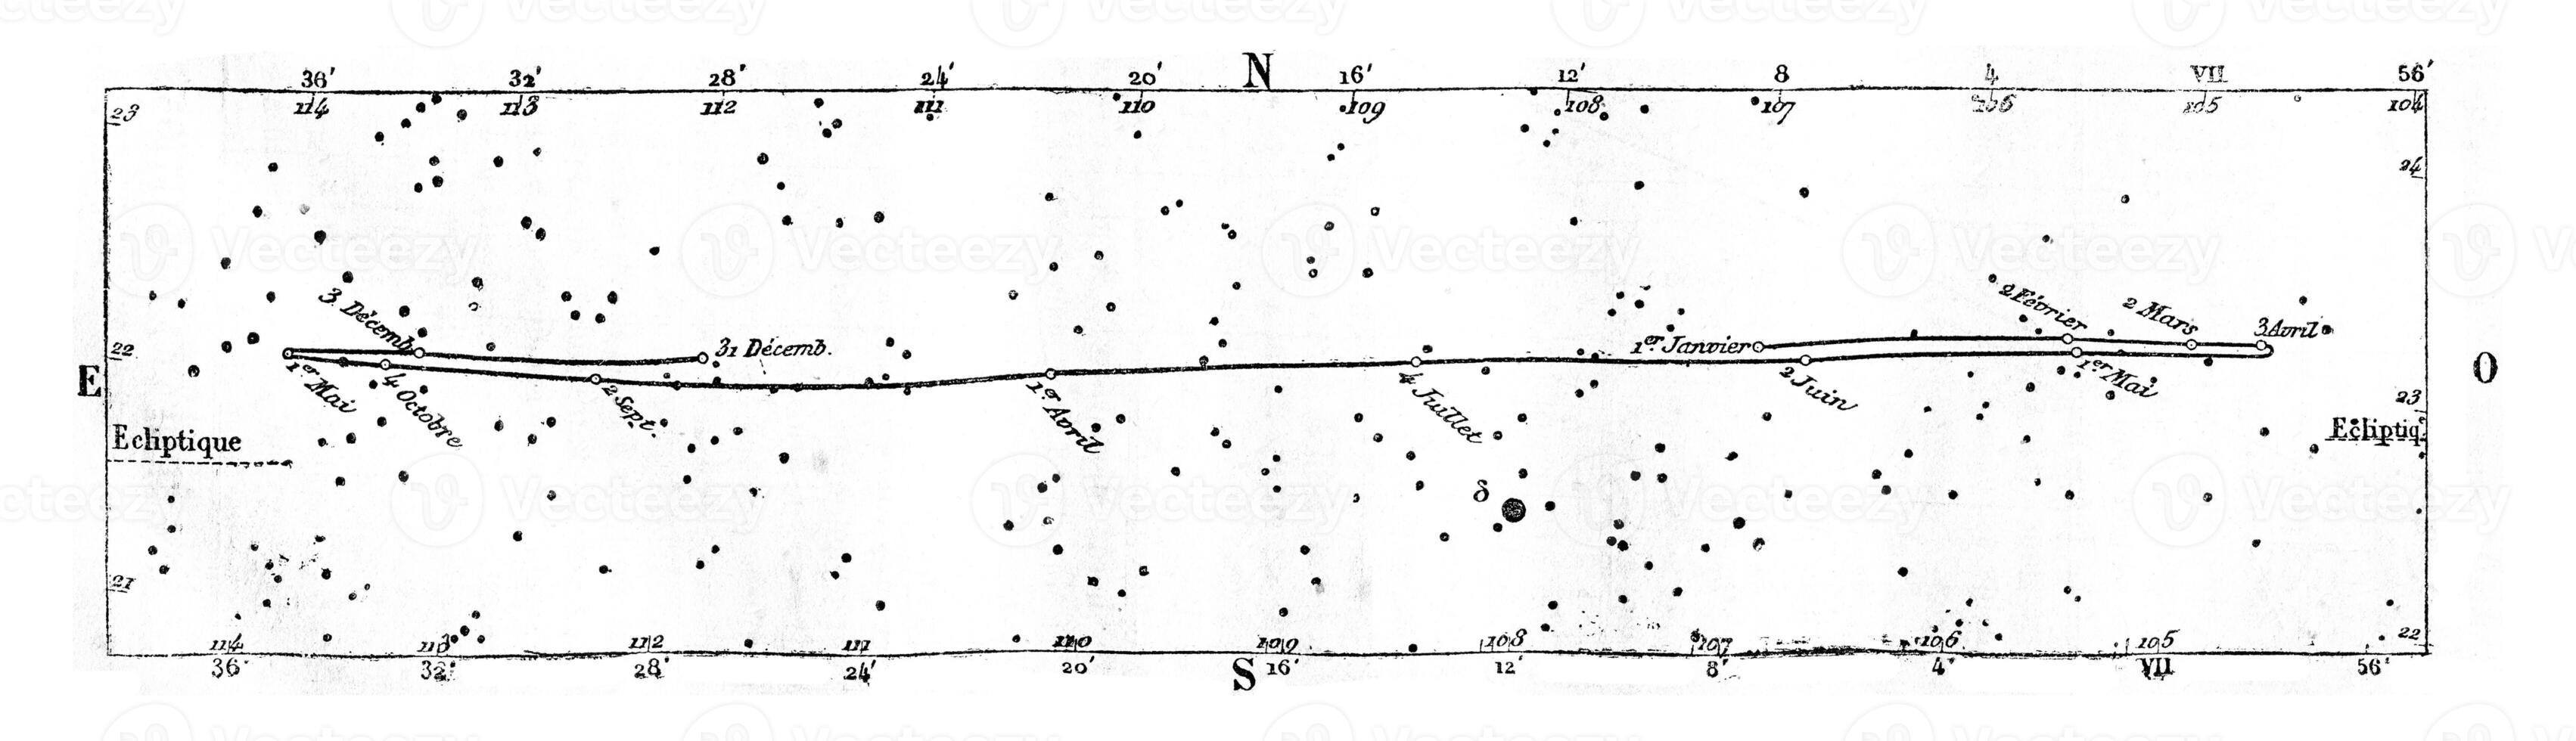 beweging en positie van Uranus, wijnoogst gravure. foto